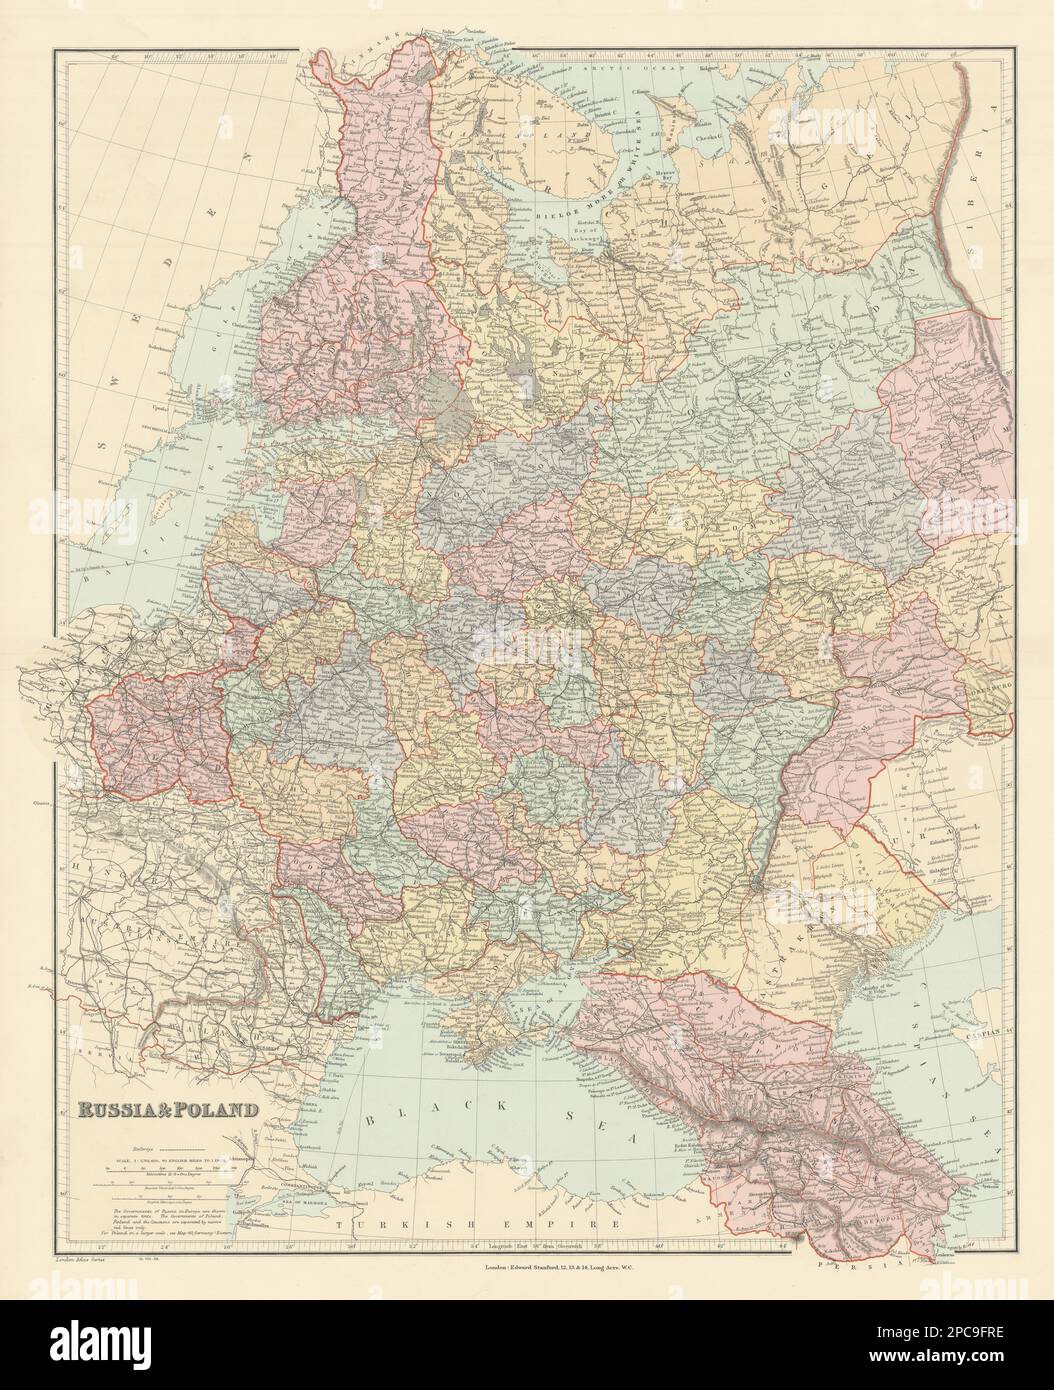 Russland Und Polen. Kaukasus. Die Republiken krais sind Eisenbahnen. STANFORD 1904 Karte Stockfoto